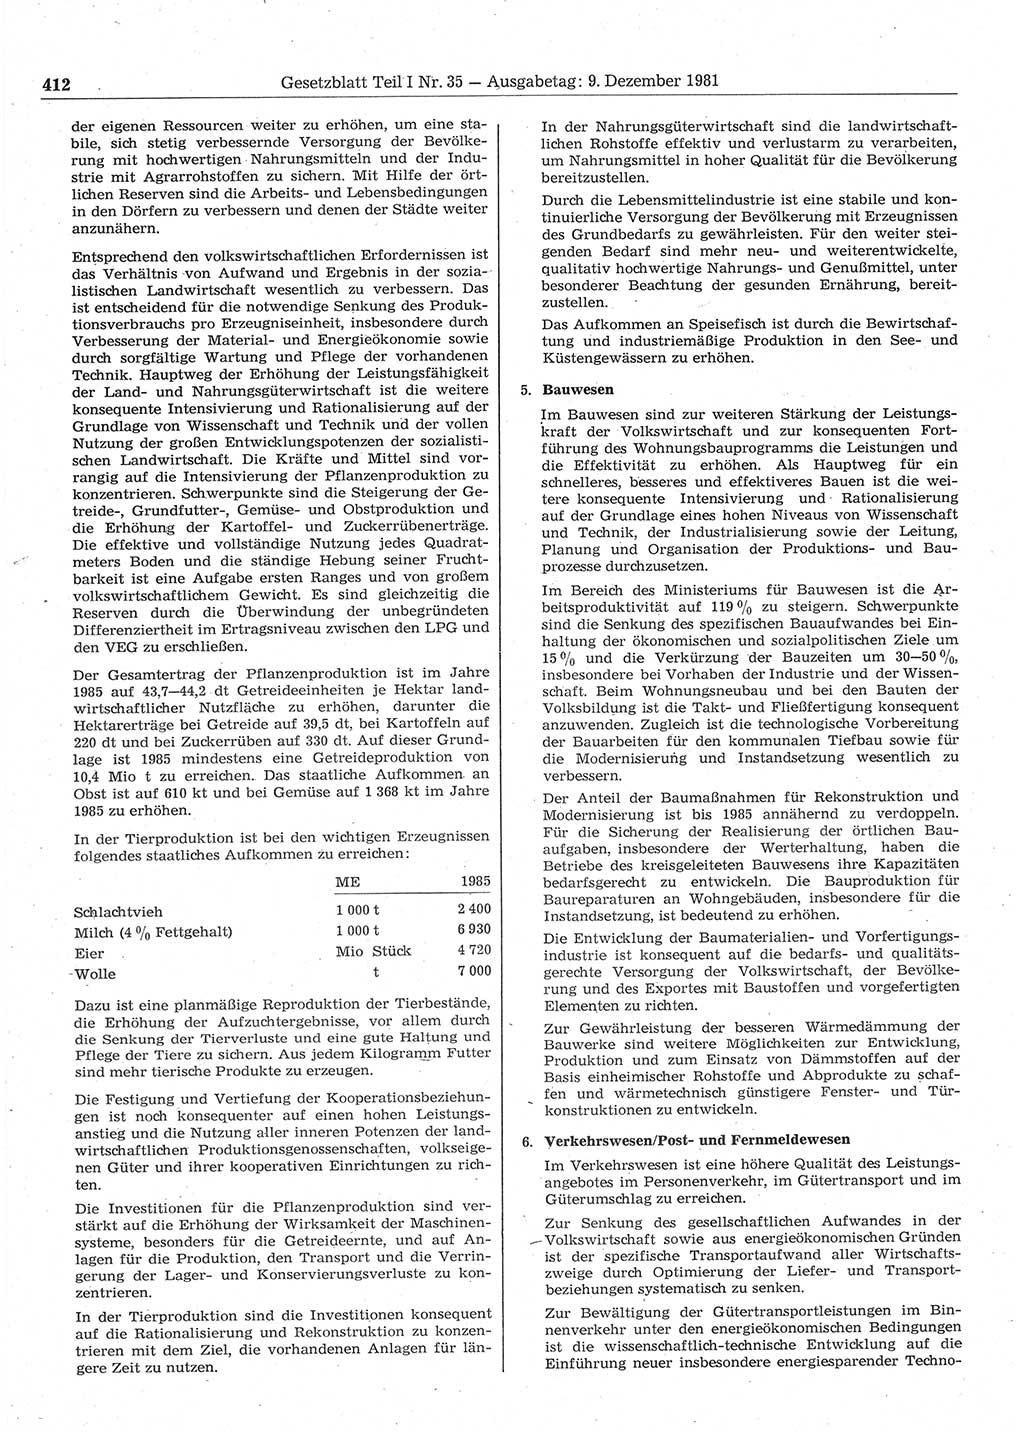 Gesetzblatt (GBl.) der Deutschen Demokratischen Republik (DDR) Teil Ⅰ 1981, Seite 412 (GBl. DDR Ⅰ 1981, S. 412)